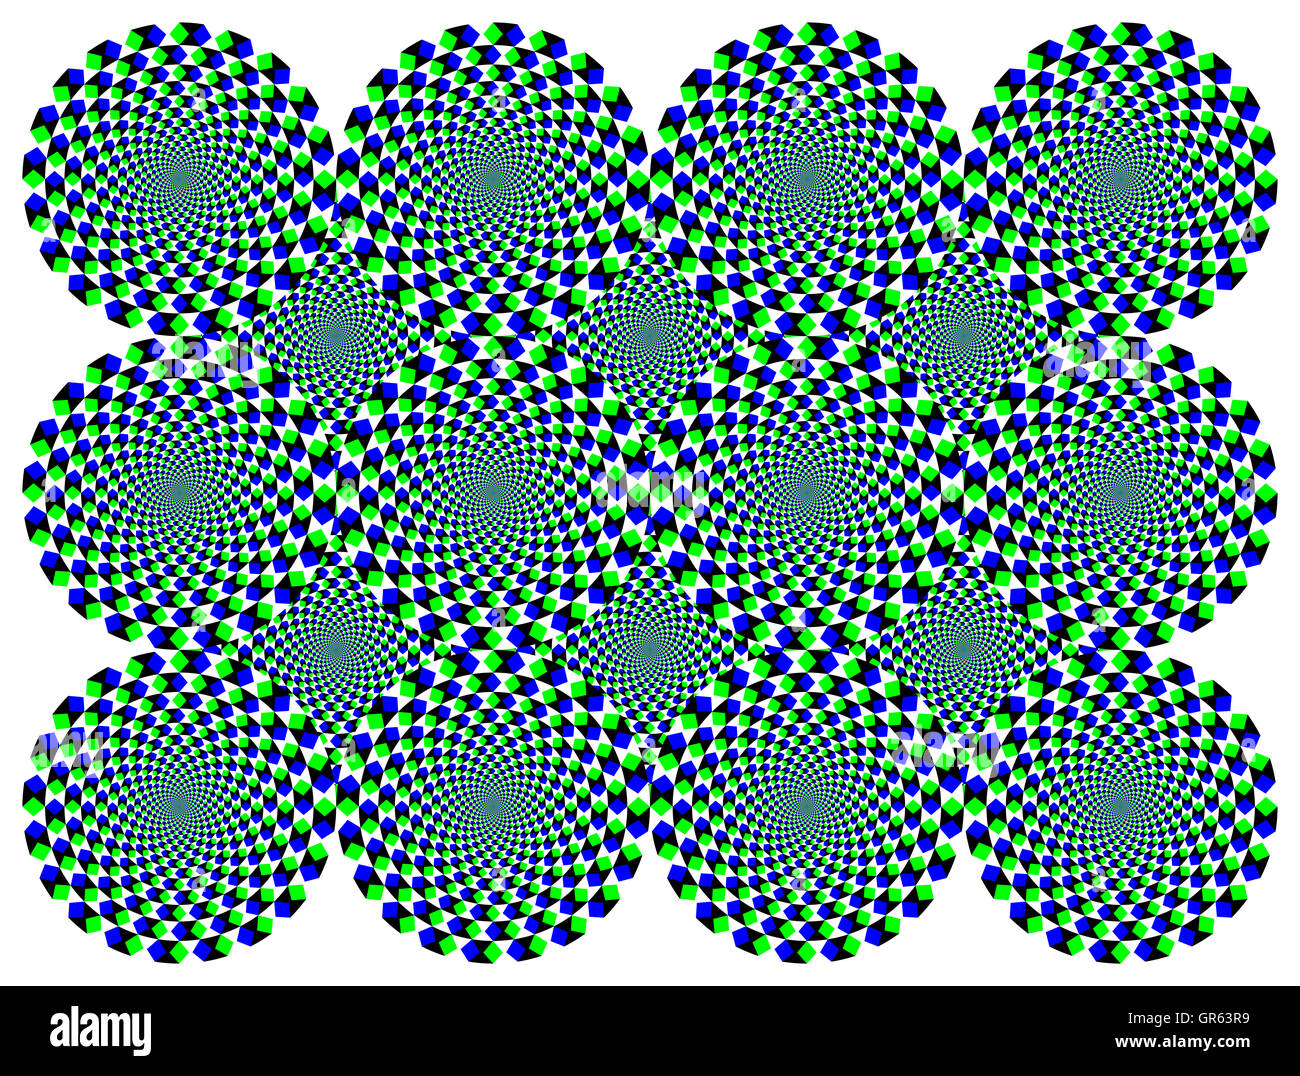 La rotation des disques de diamant illusion de mouvement. Les roues avec diamants bleu et vert semblent se déplacer vers la droite lors du déplacement des yeux. Banque D'Images